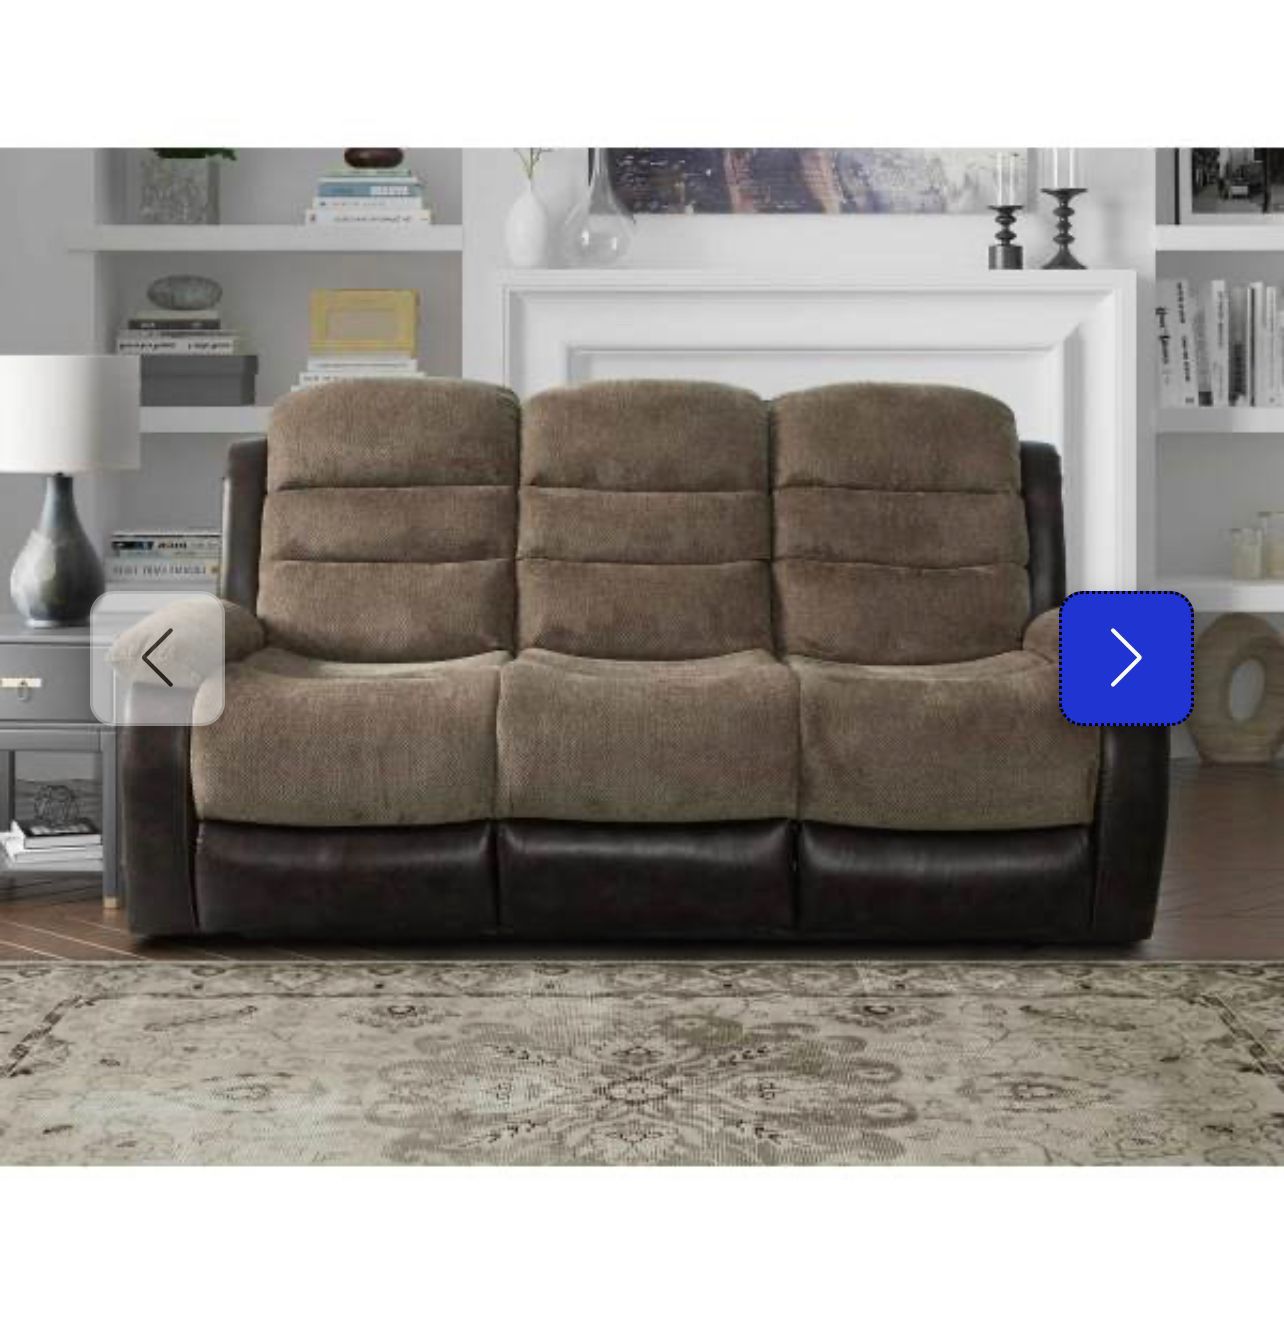 Brand New 5pcs Manual Recliner Living Room Set